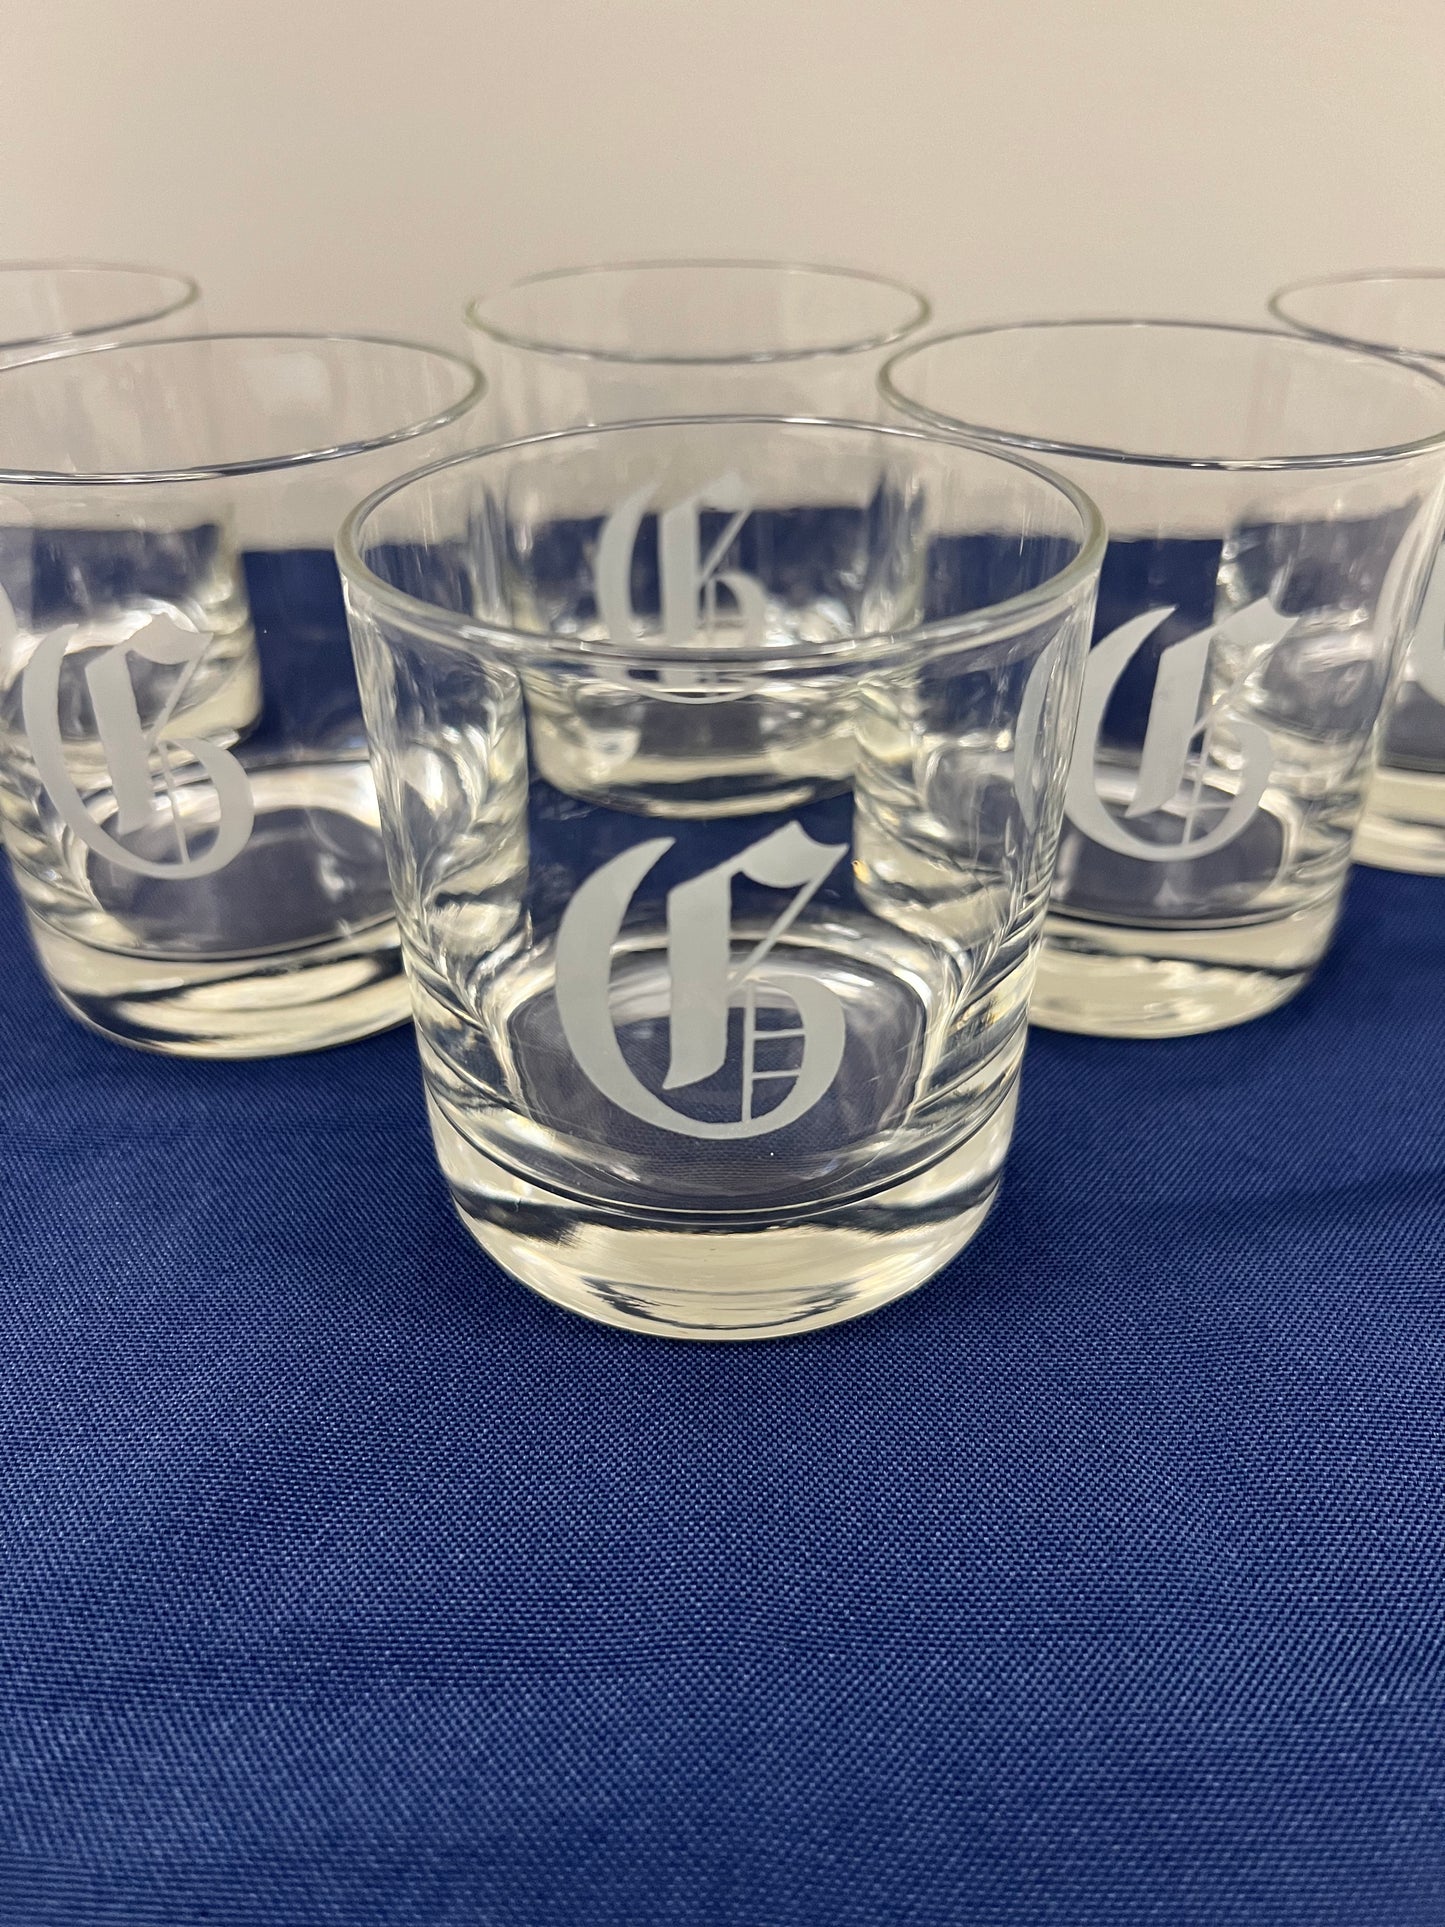 G Monogram Rocks Glasses, Set of 6